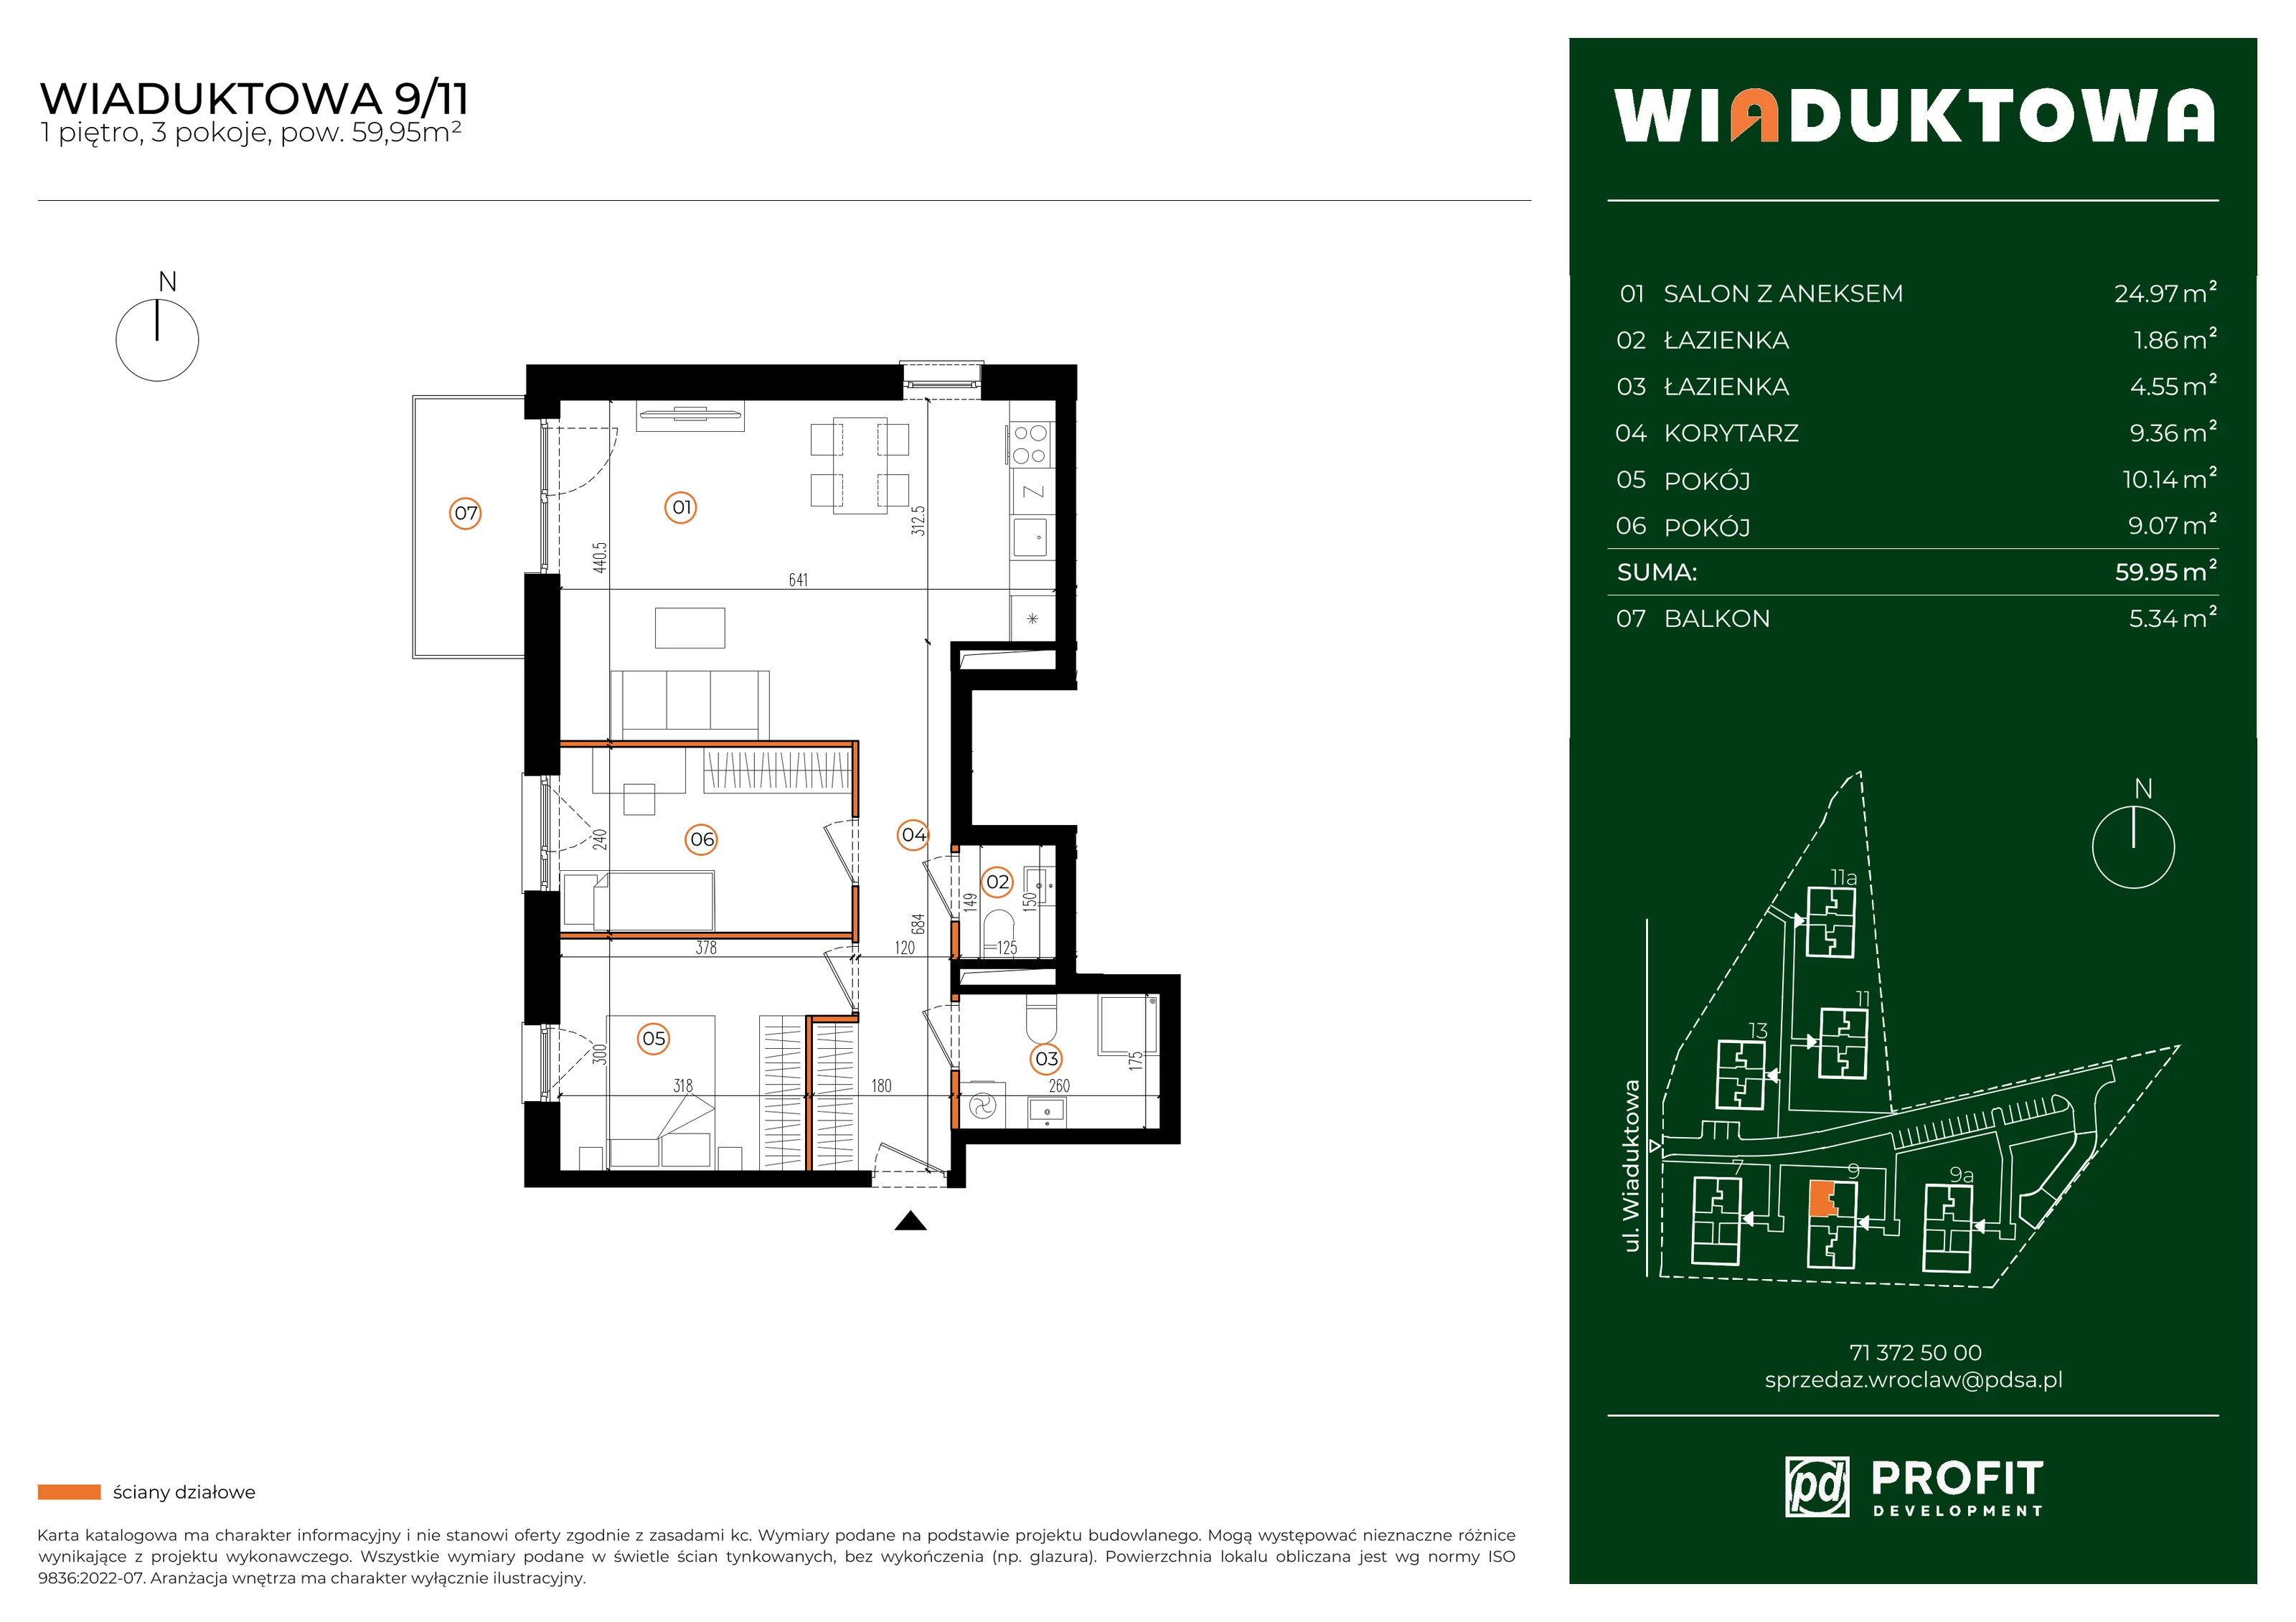 Mieszkanie 59,95 m², piętro 1, oferta nr WI/9/11, Wiaduktowa, Wrocław, Krzyki-Partynice, Krzyki, ul. Wiaduktowa